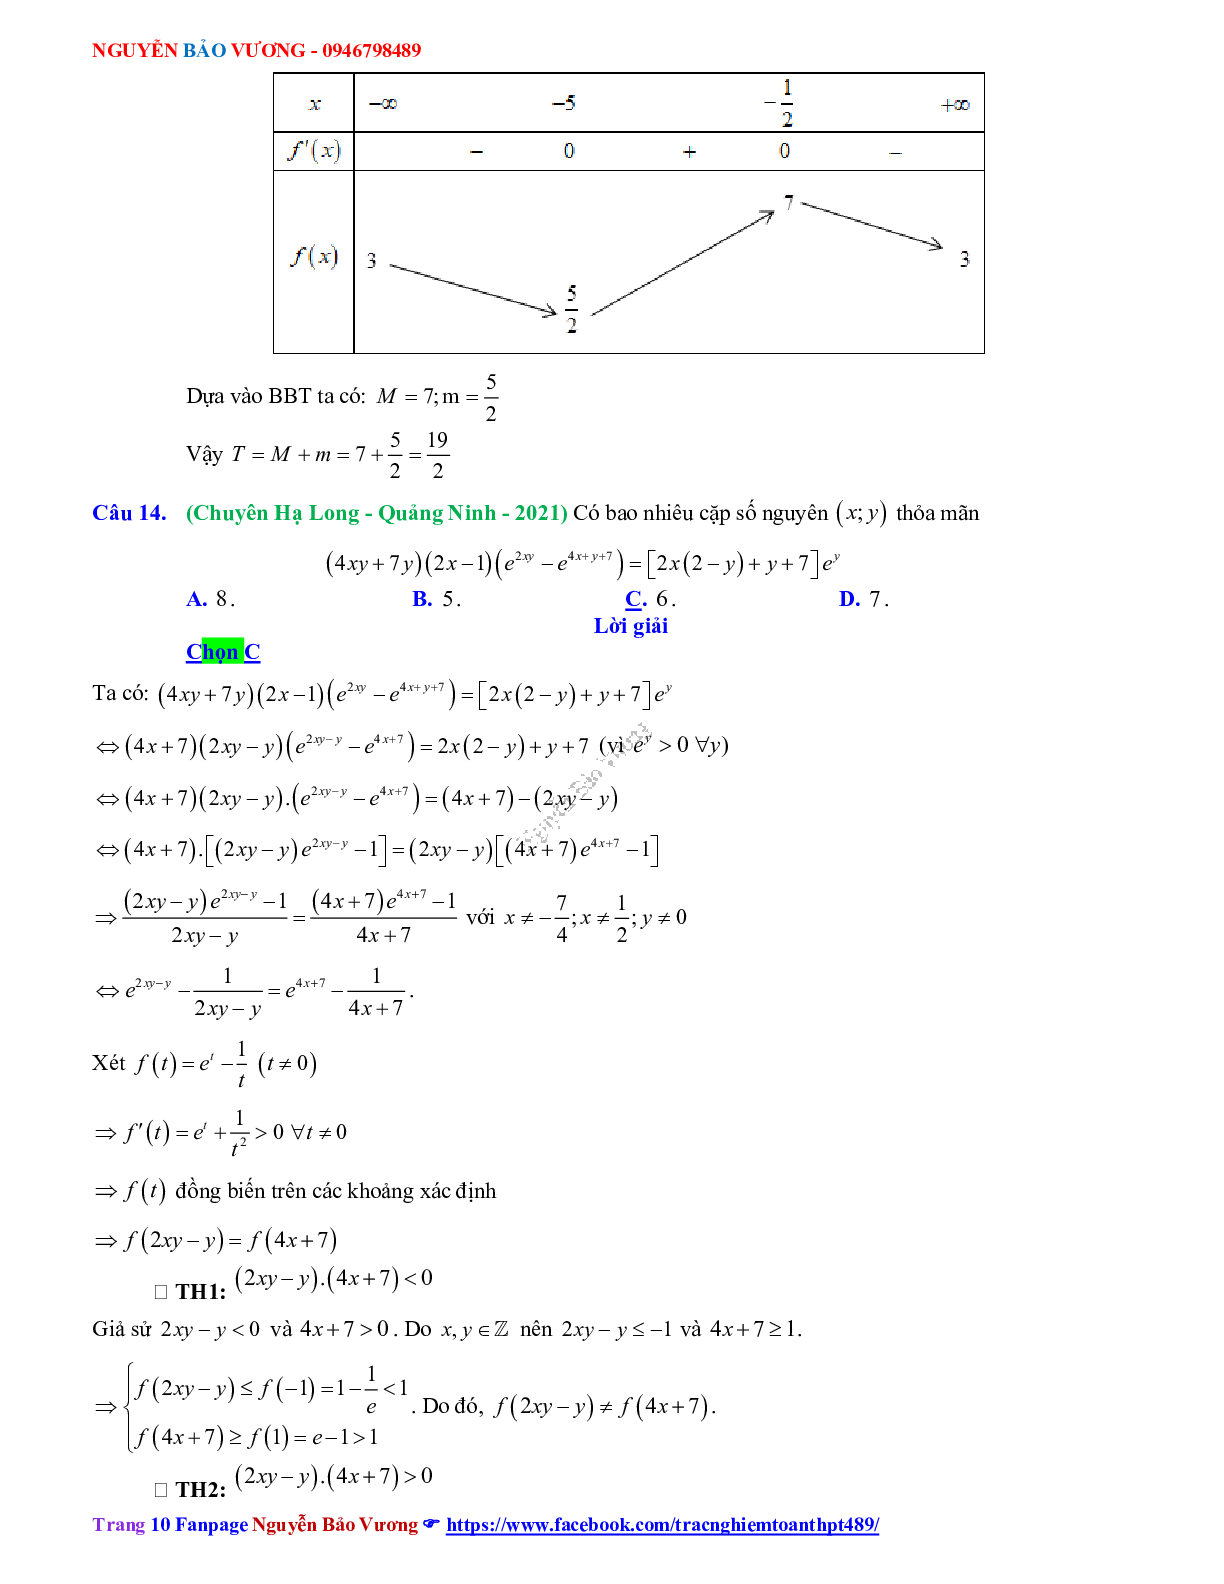 Trắc nghiệm Ôn thi THPT QG Toán 12: Đáp án mũ - lũy thừa - logarit mức độ vận dụng cao (trang 10)